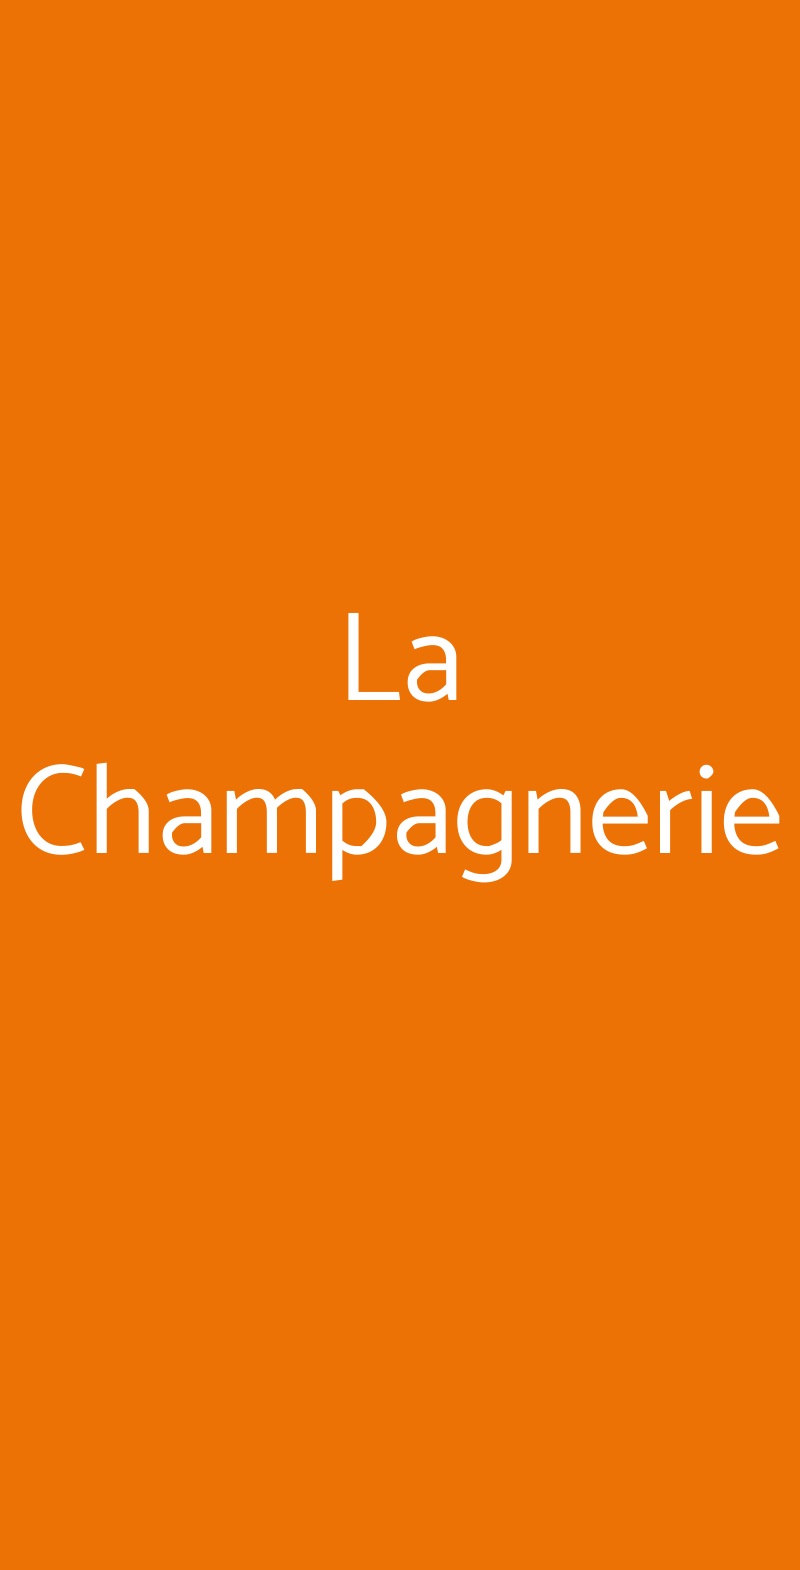 La Champagnerie Milano menù 1 pagina